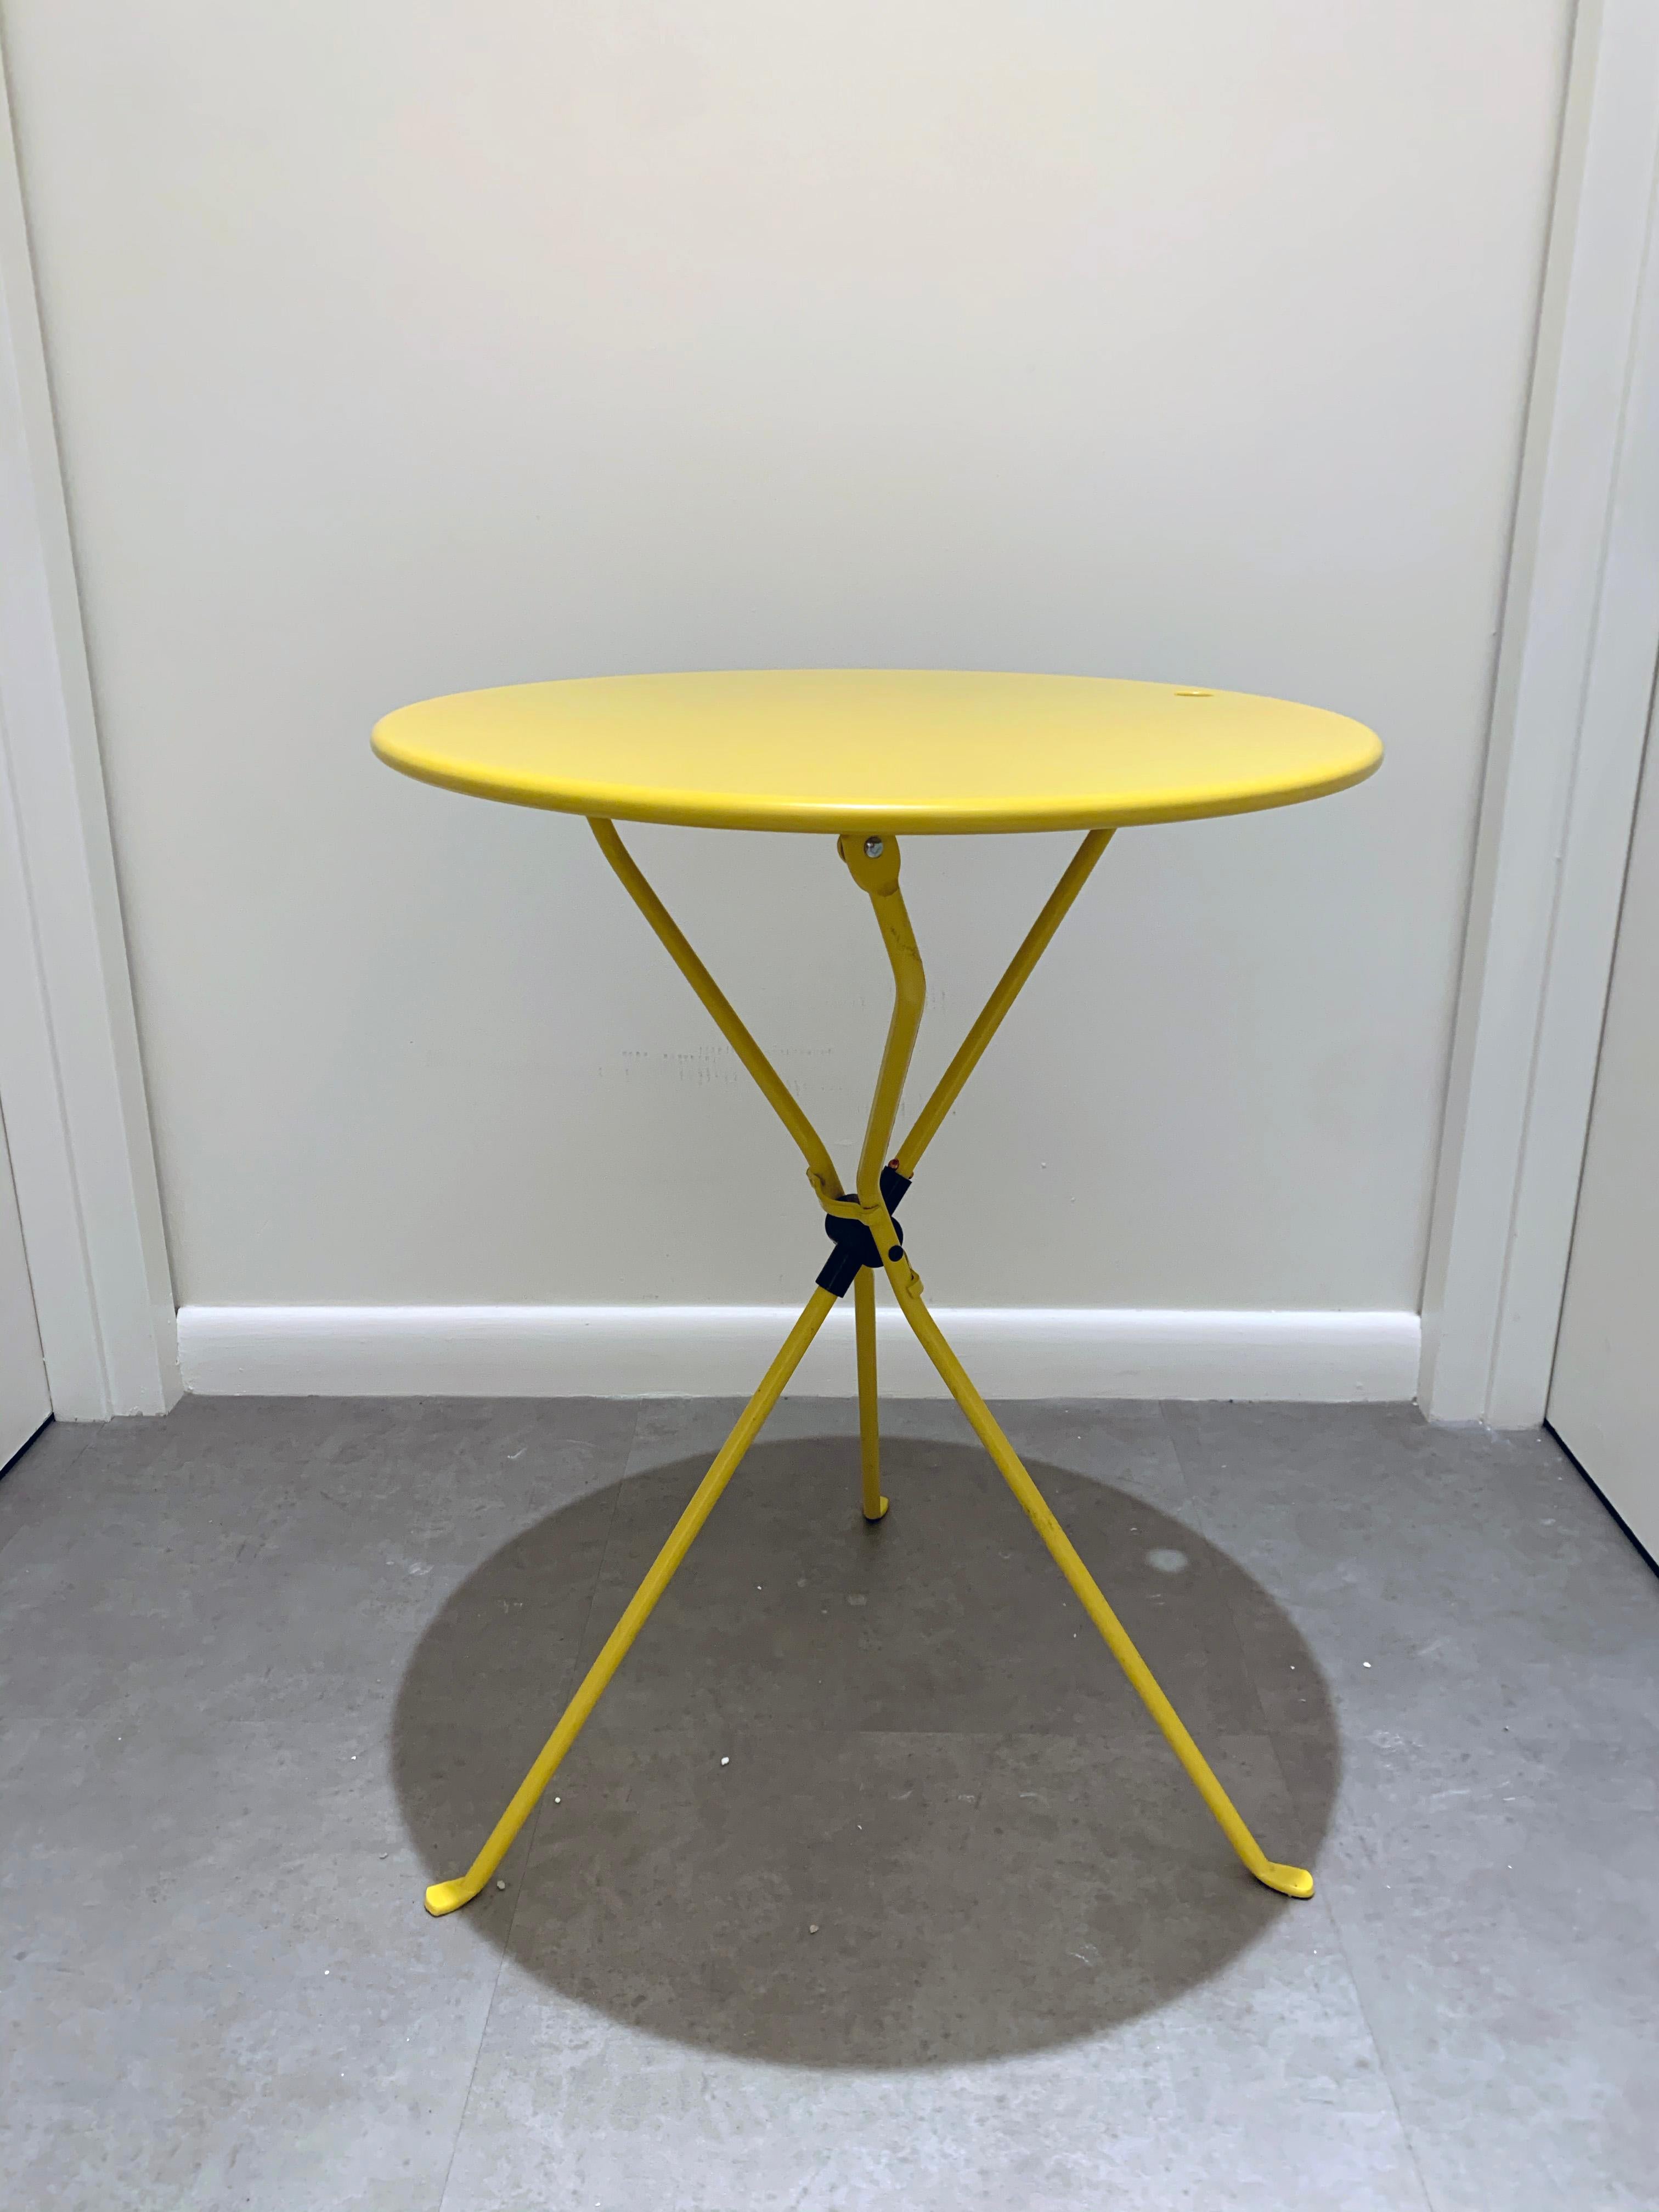 Steel Zanotta Cumano Yellow Folding table designed by Achille Castiglioni